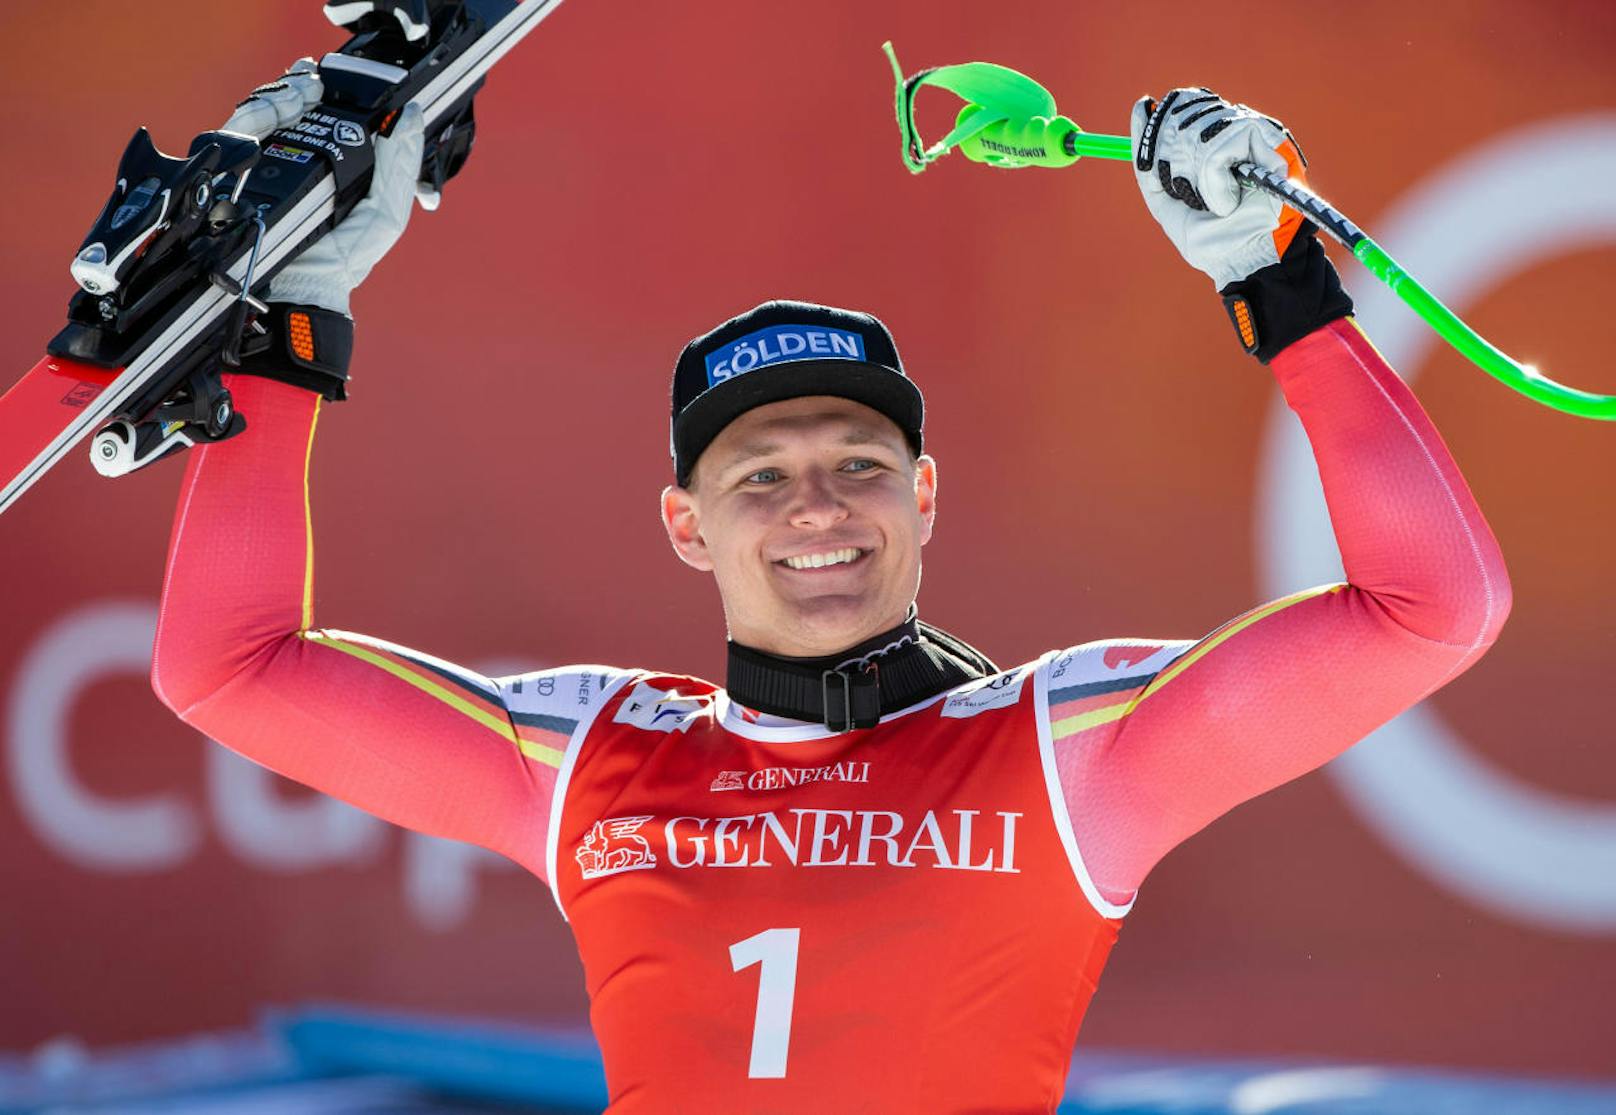 Heimsieg in Garmisch! Lokalmatador Thomas Dreßen gewann die Abfahrt mit Nummer 1. Kitz-Sieger Matthias Mayer fehlte krank, Vincent Kriechmayr wurde als bester ÖSV-Läufer Vierter.